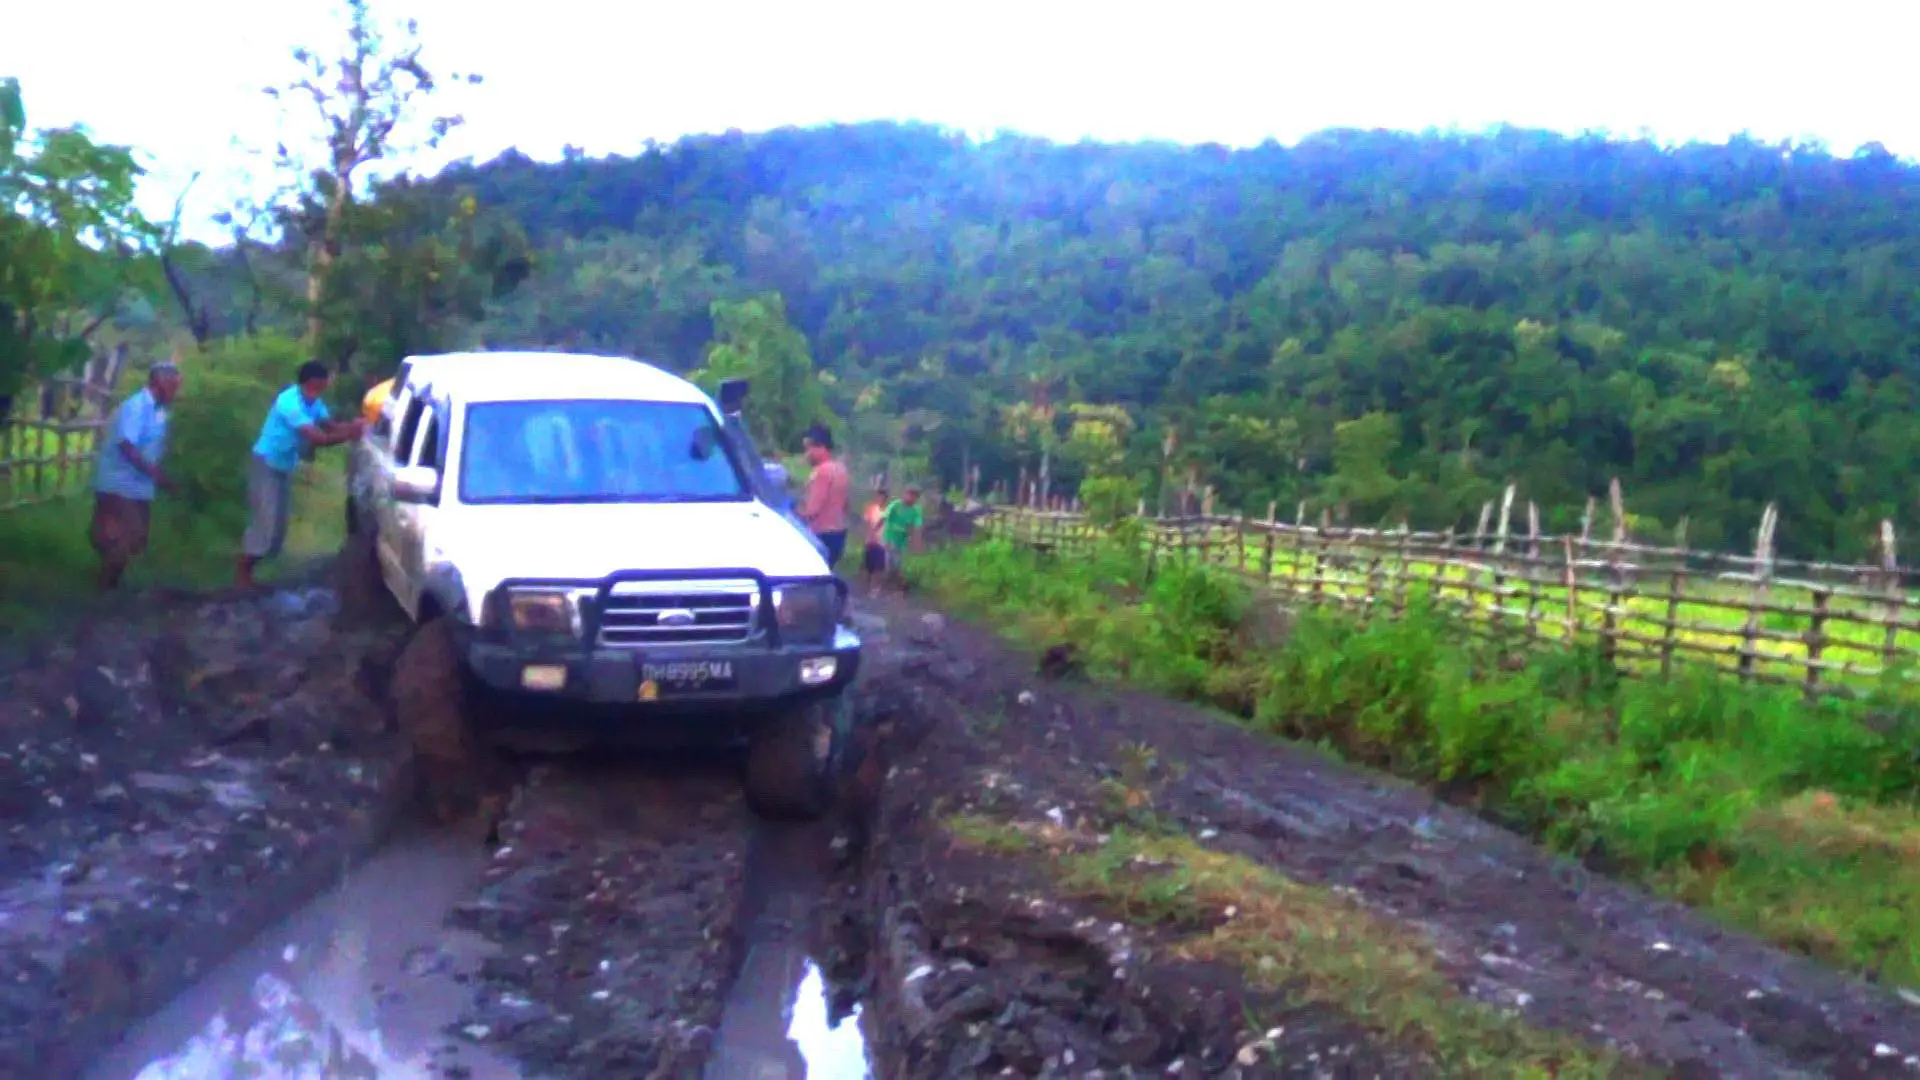 Perjalanan darat menuju Kecamatan Amfoang Timur, NTT, yang berbatasan dengan Distrik Oecusse, Timor Leste, sulit ditempuh. (Foto: Dok. Pribadi/Raja Amfoang, Robby G.J. Manoh/Liputan6.com/Anri Syaiful)